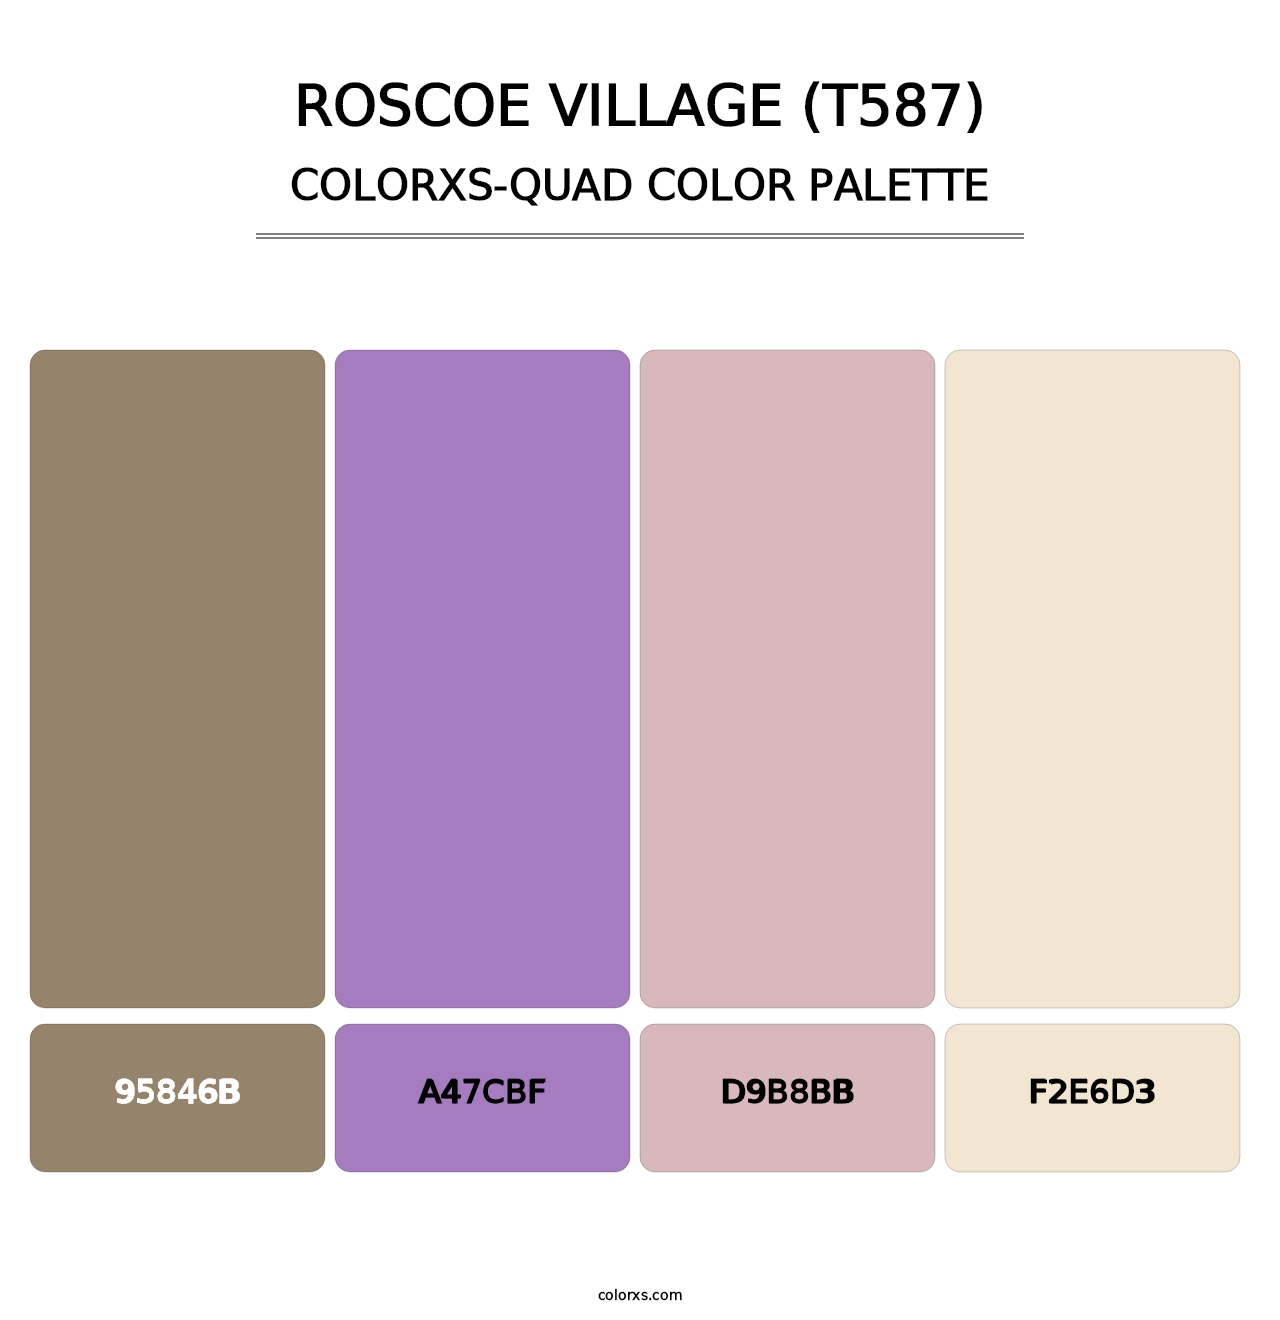 Roscoe Village (T587) - Colorxs Quad Palette